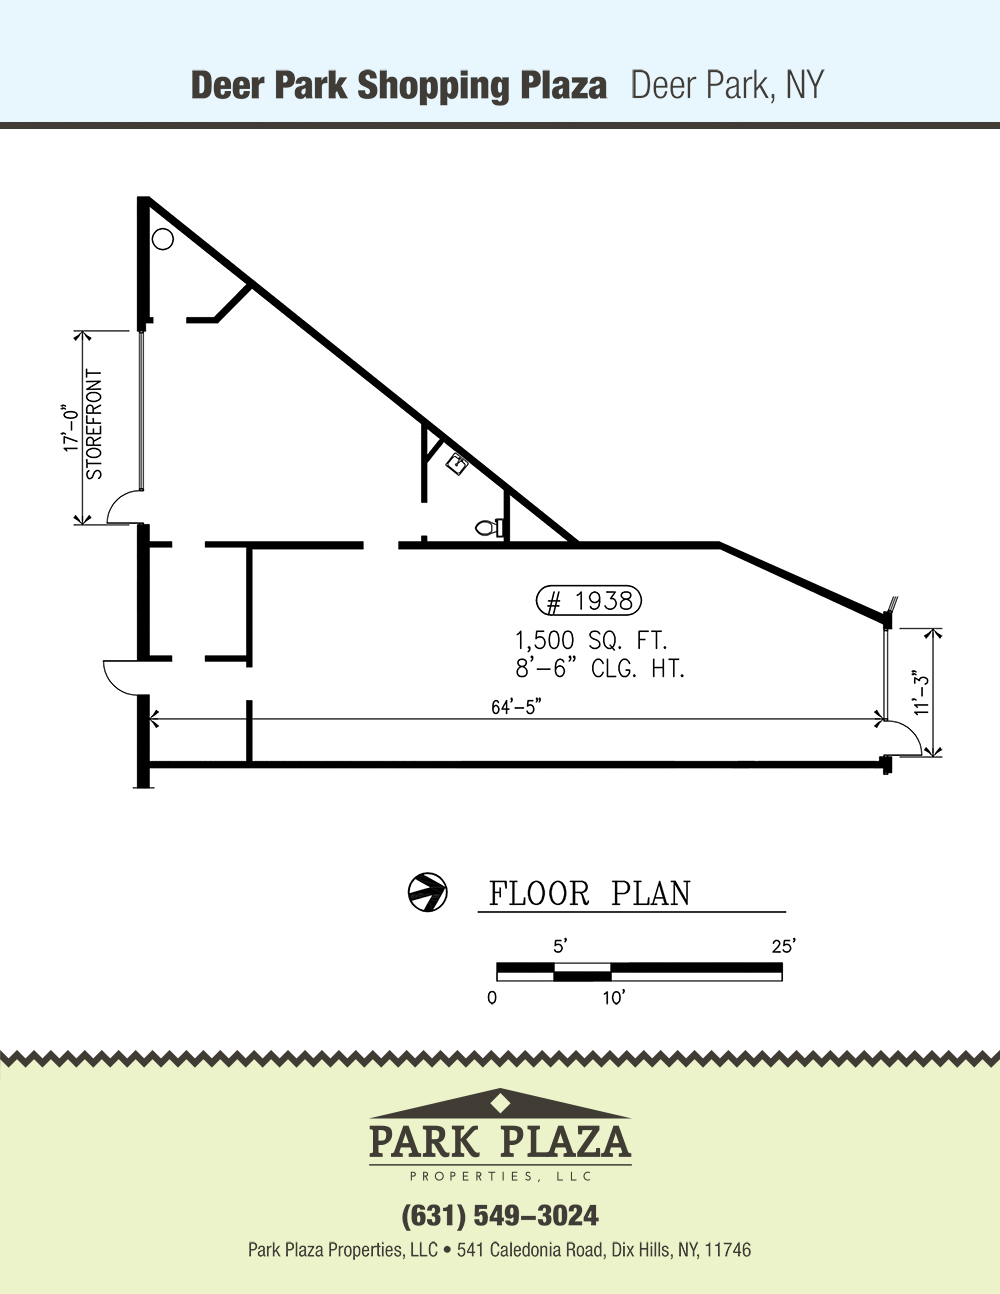 DeerPark 1938 Floor Plan Download